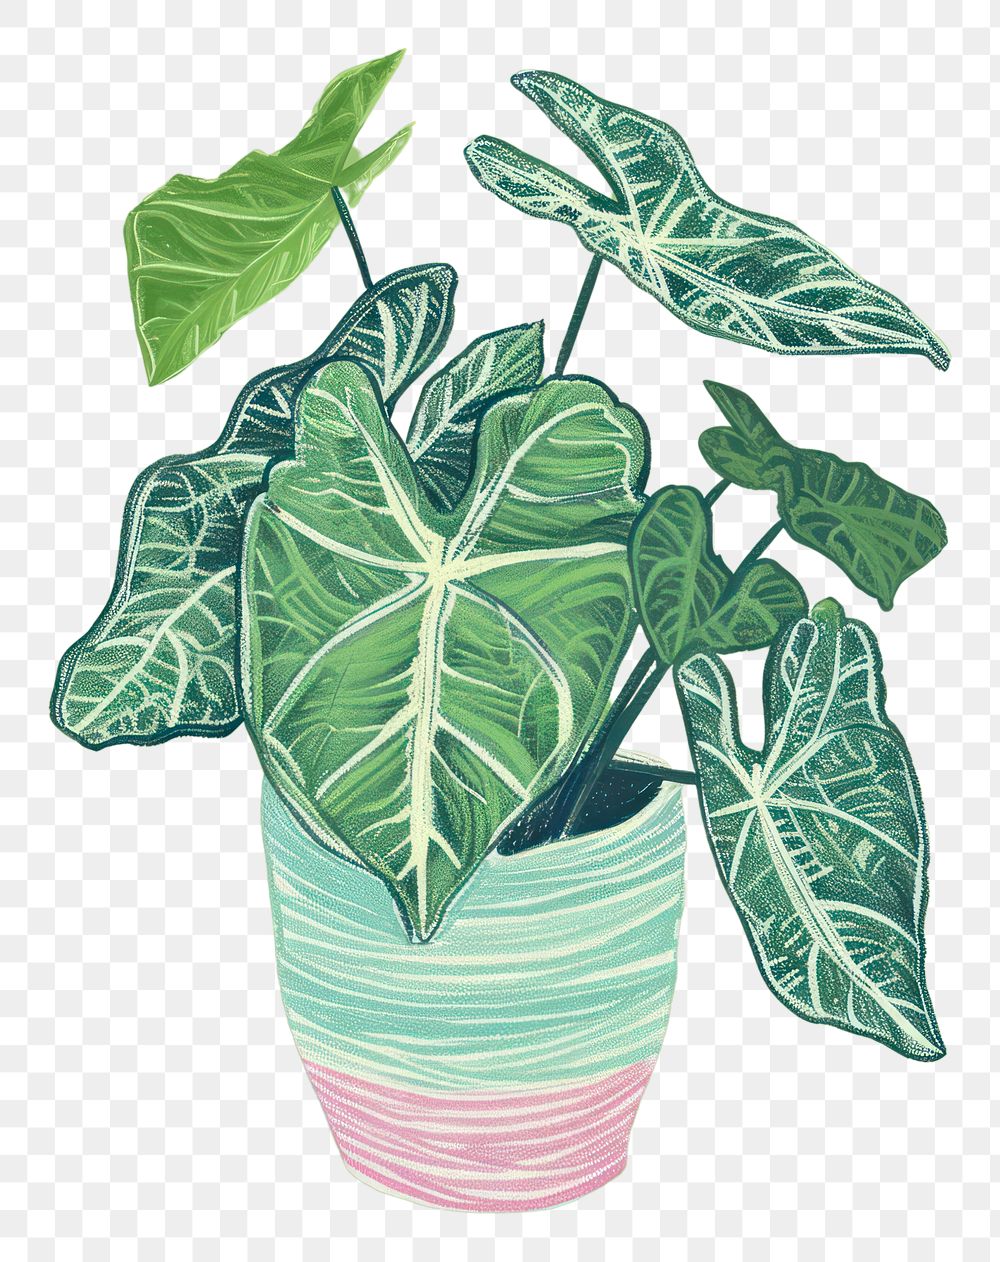 PNG Caladium plant houseplant green leaf.